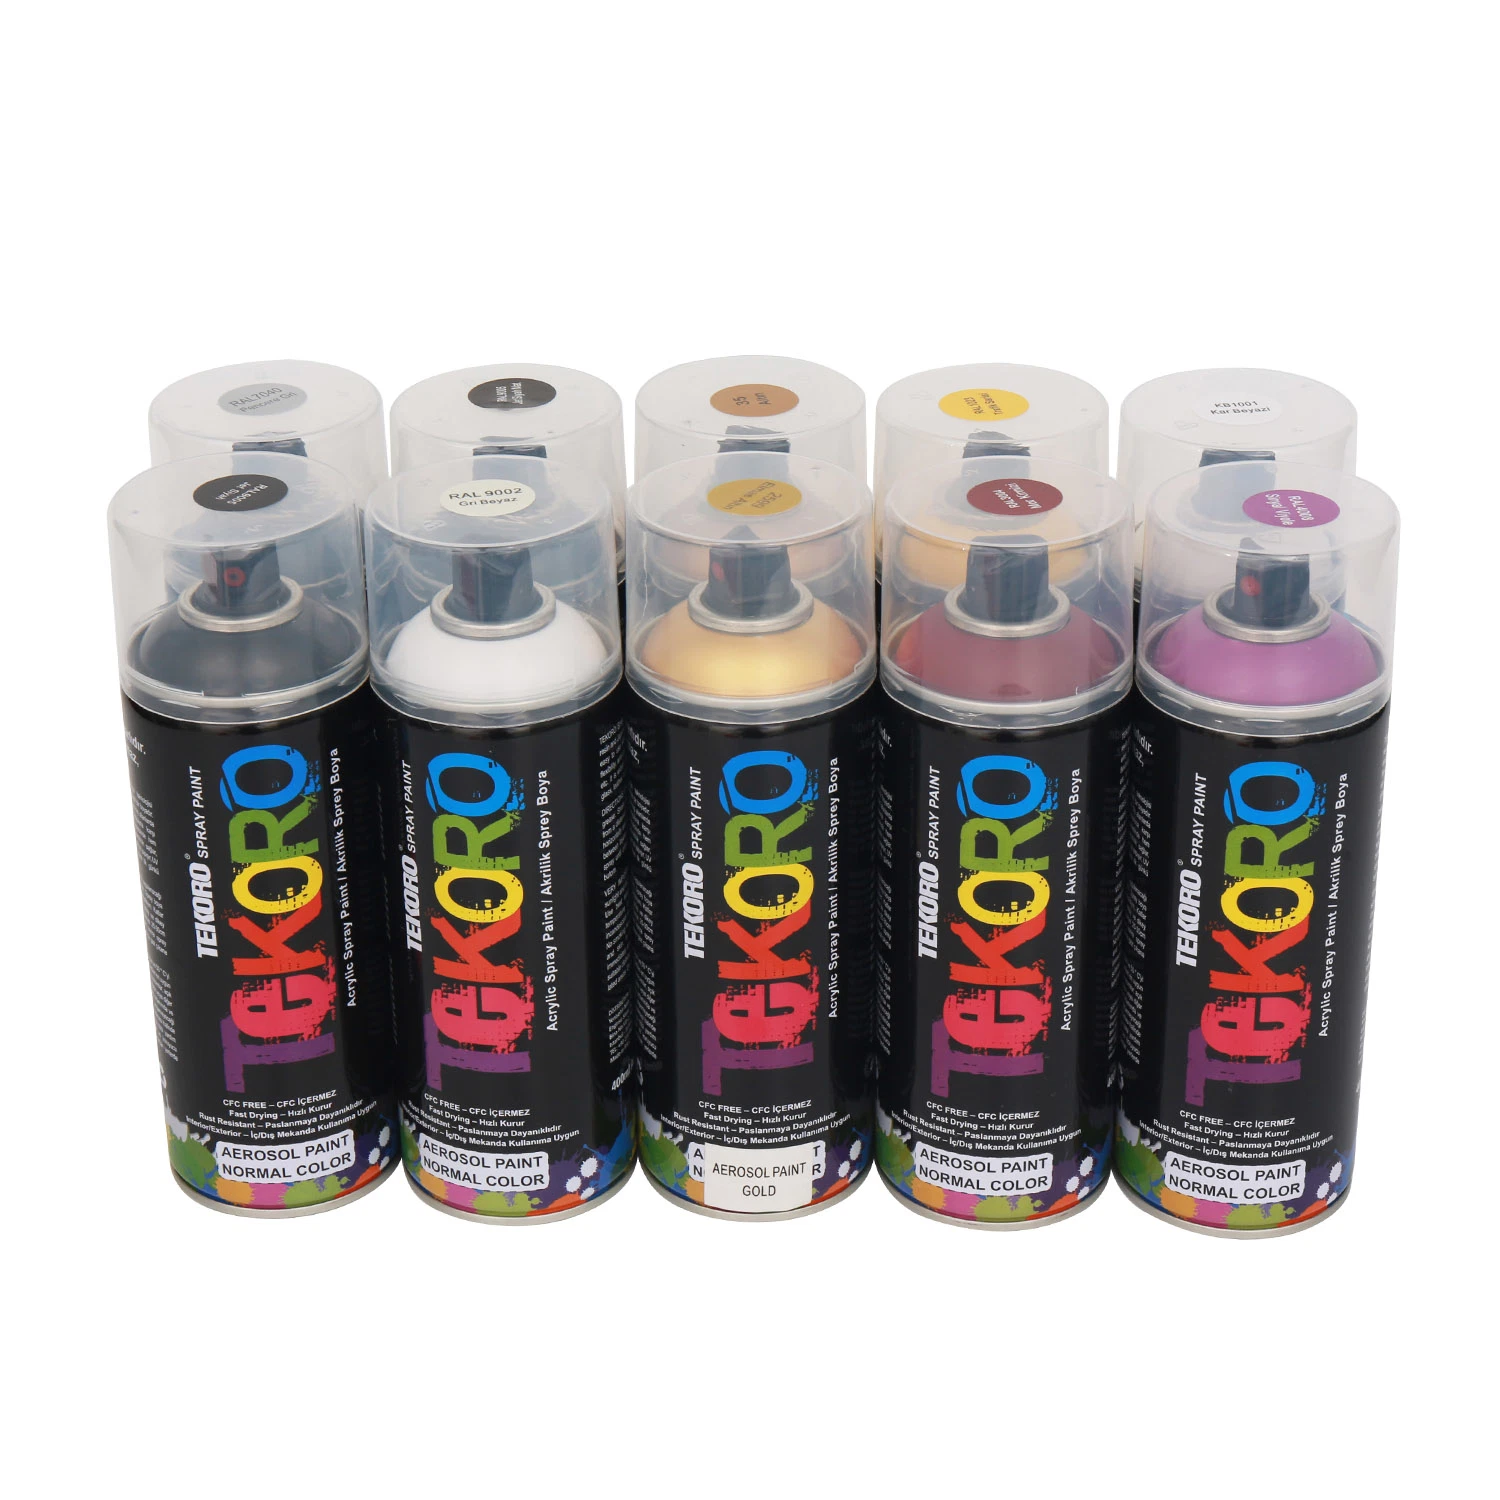 Tekoro Innen Außen-Spray Paint Dosen hohe Qualität schnell trocknende Farbe für Holz, Metall, Kunststoff, Hardware, Auto-Farbe